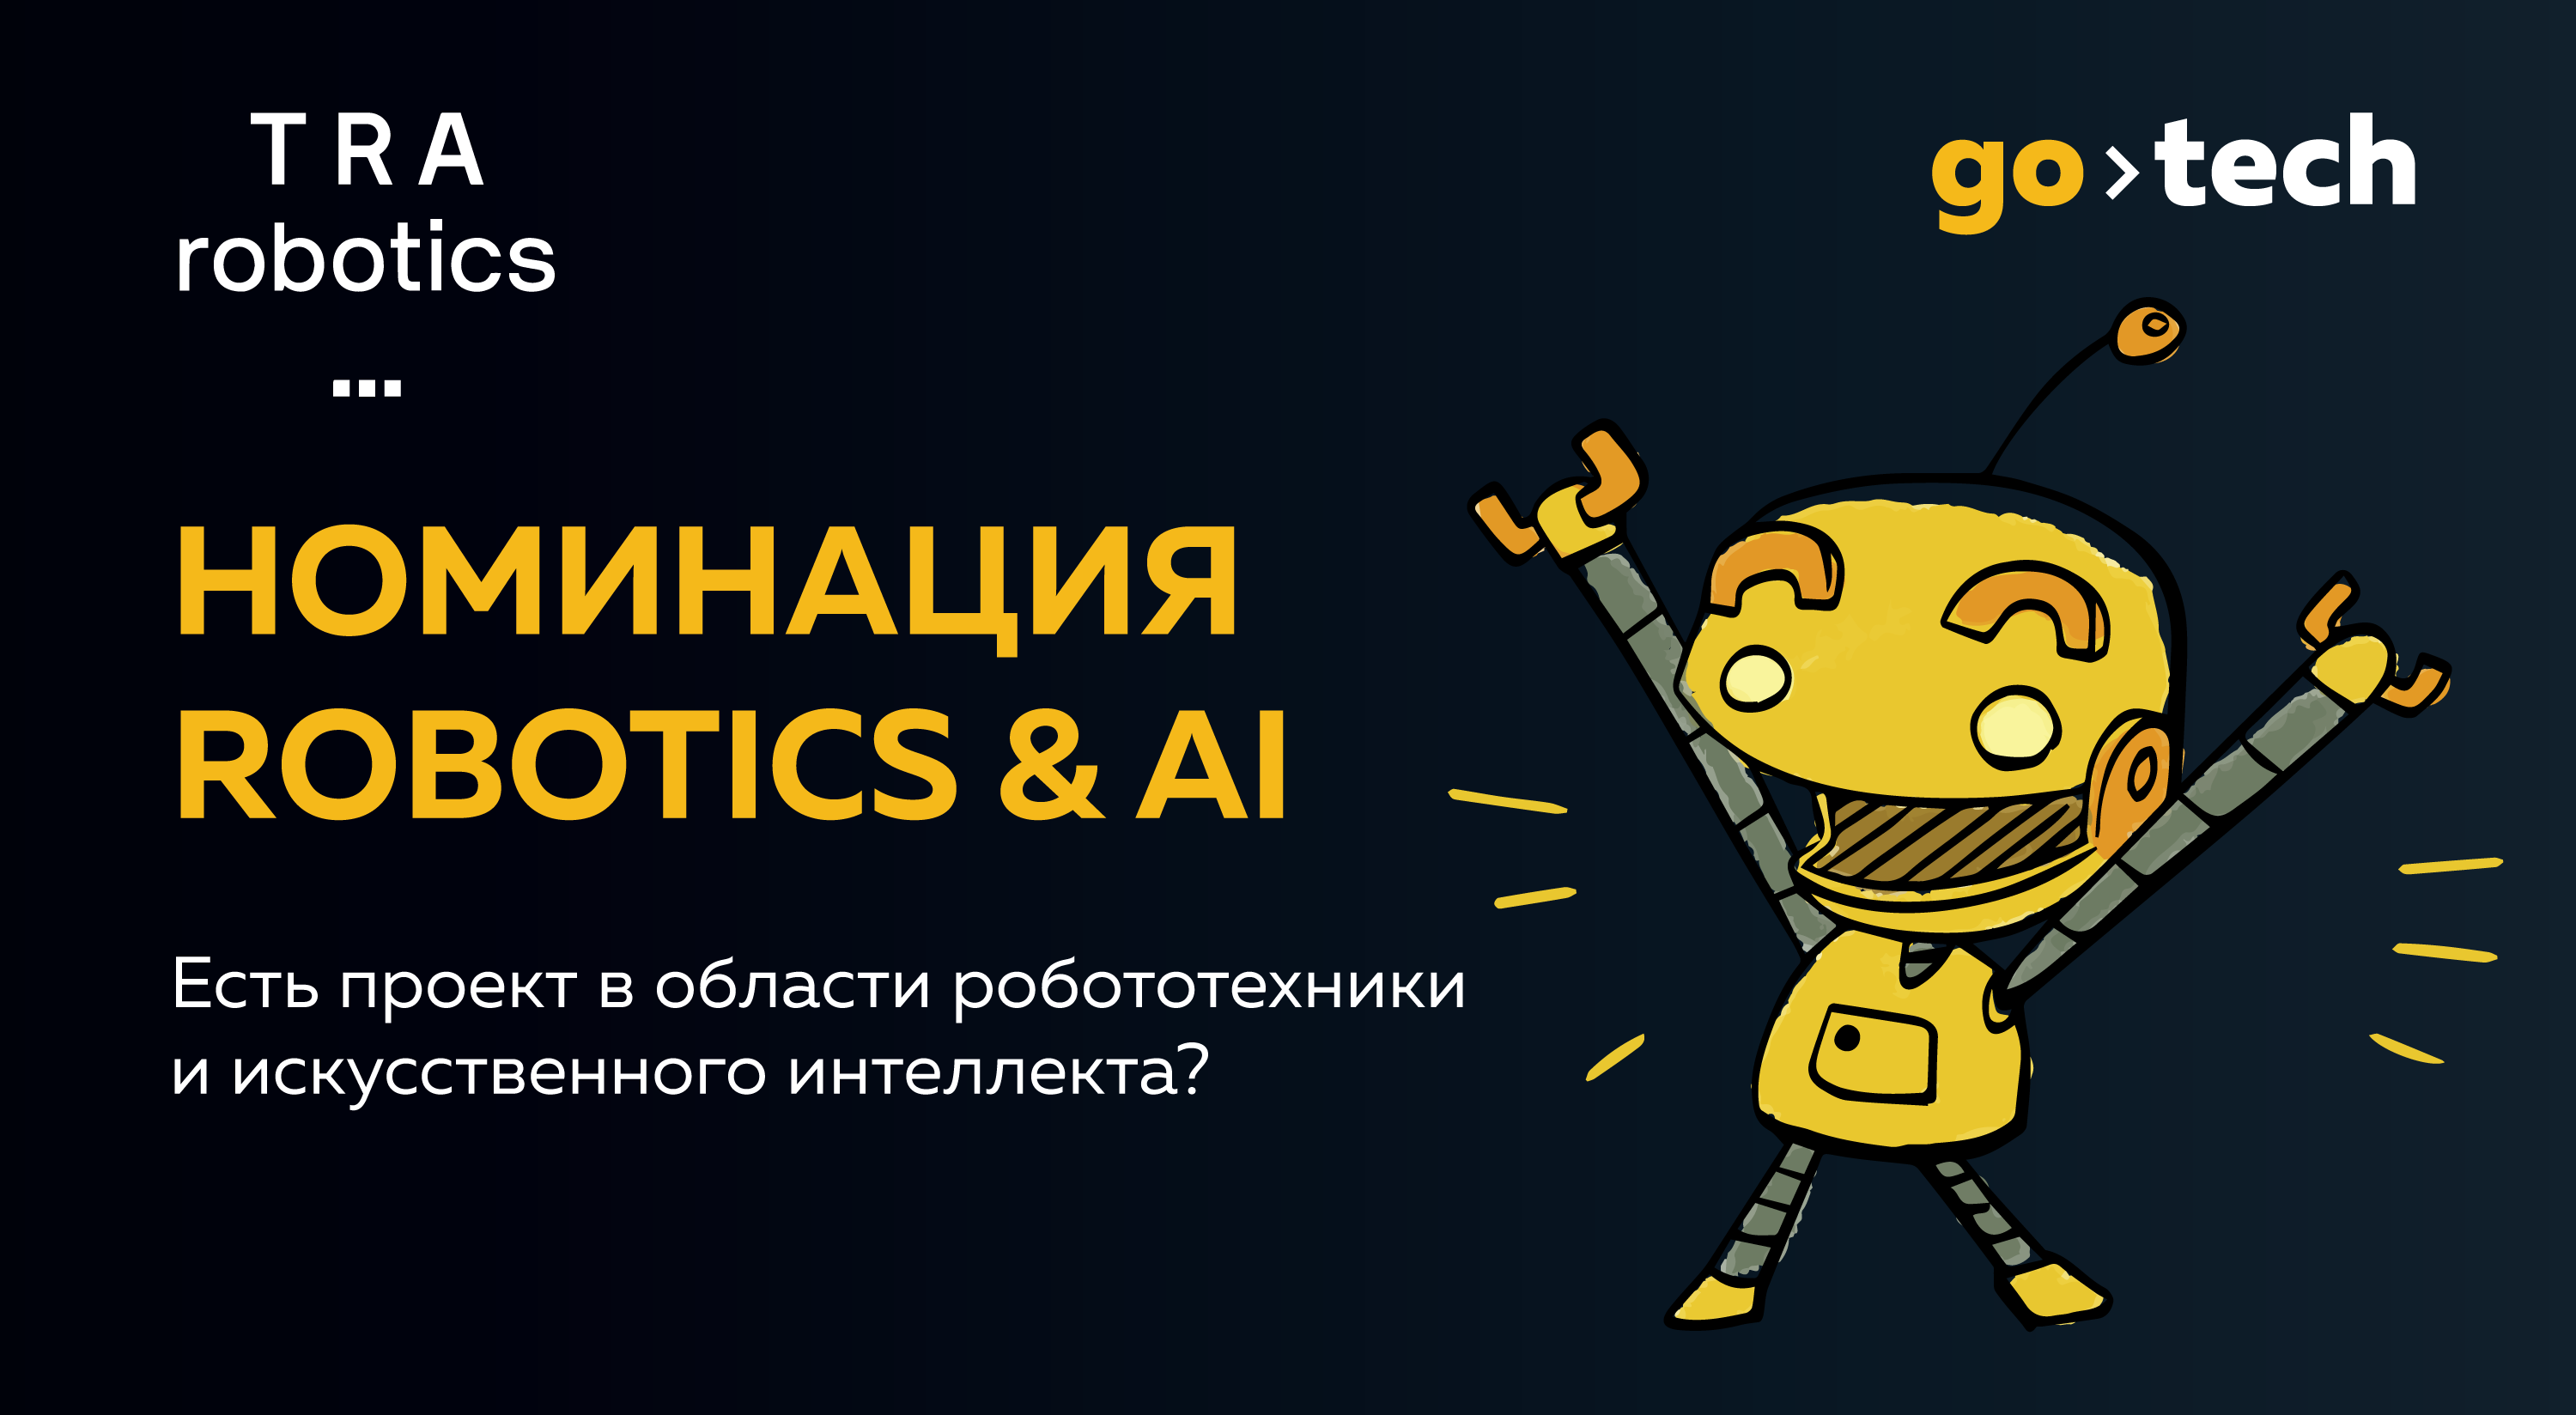 Победитель номинации «Робототехника и искусственный интеллект» конкурса GoTech примет участие в создании фабрики гибкого производства